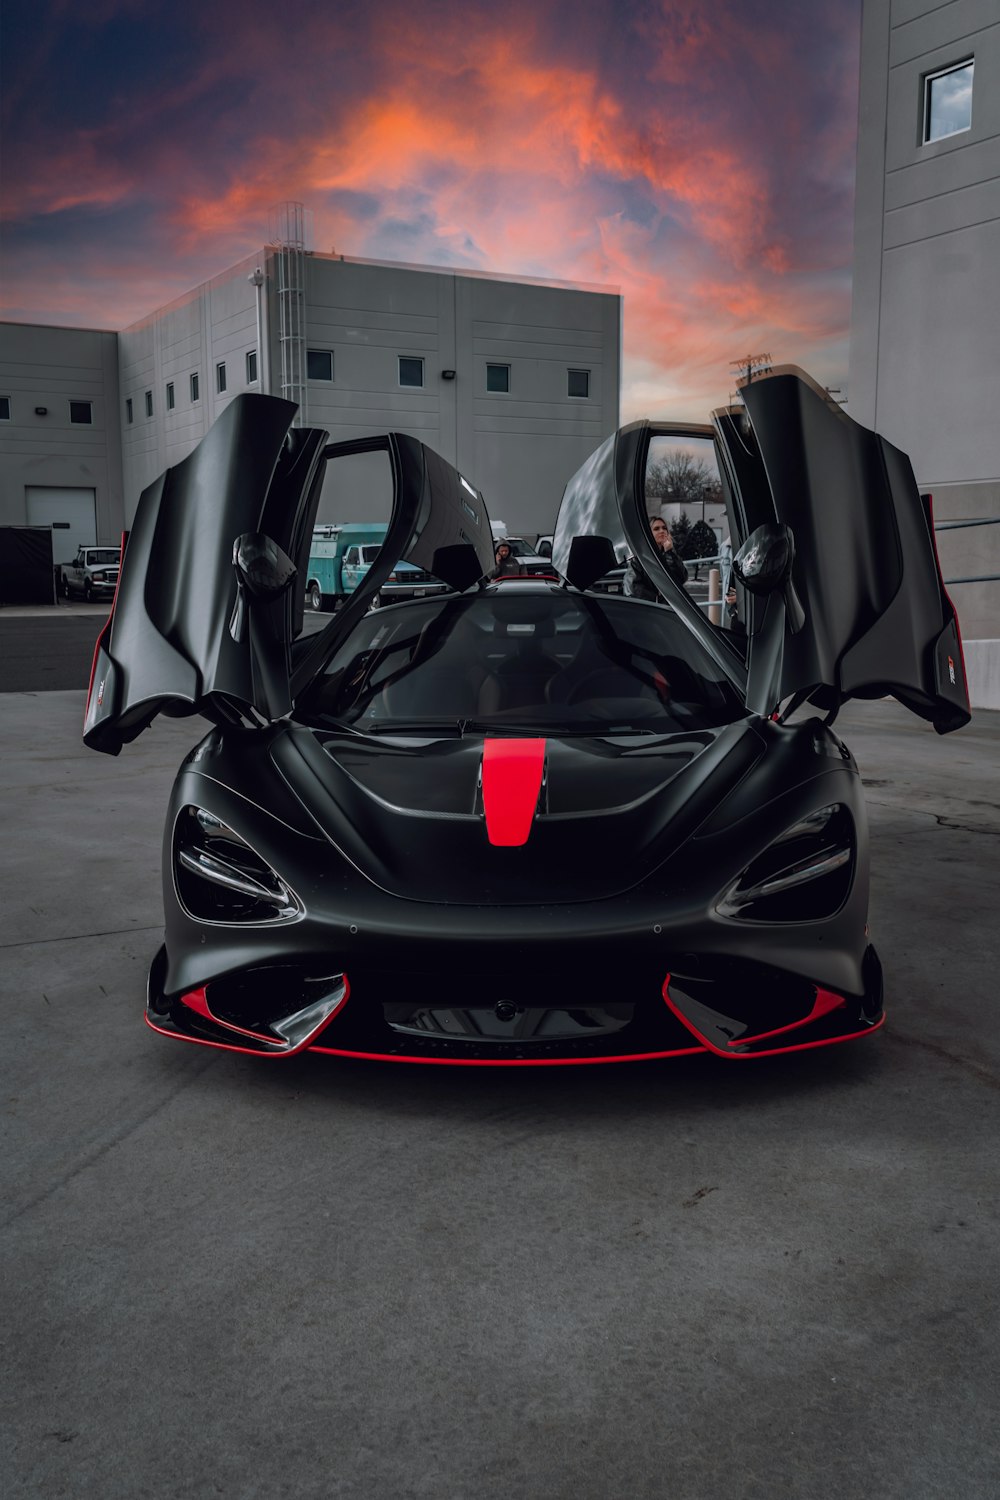 ブラック&レッド Lamborghini Aventador